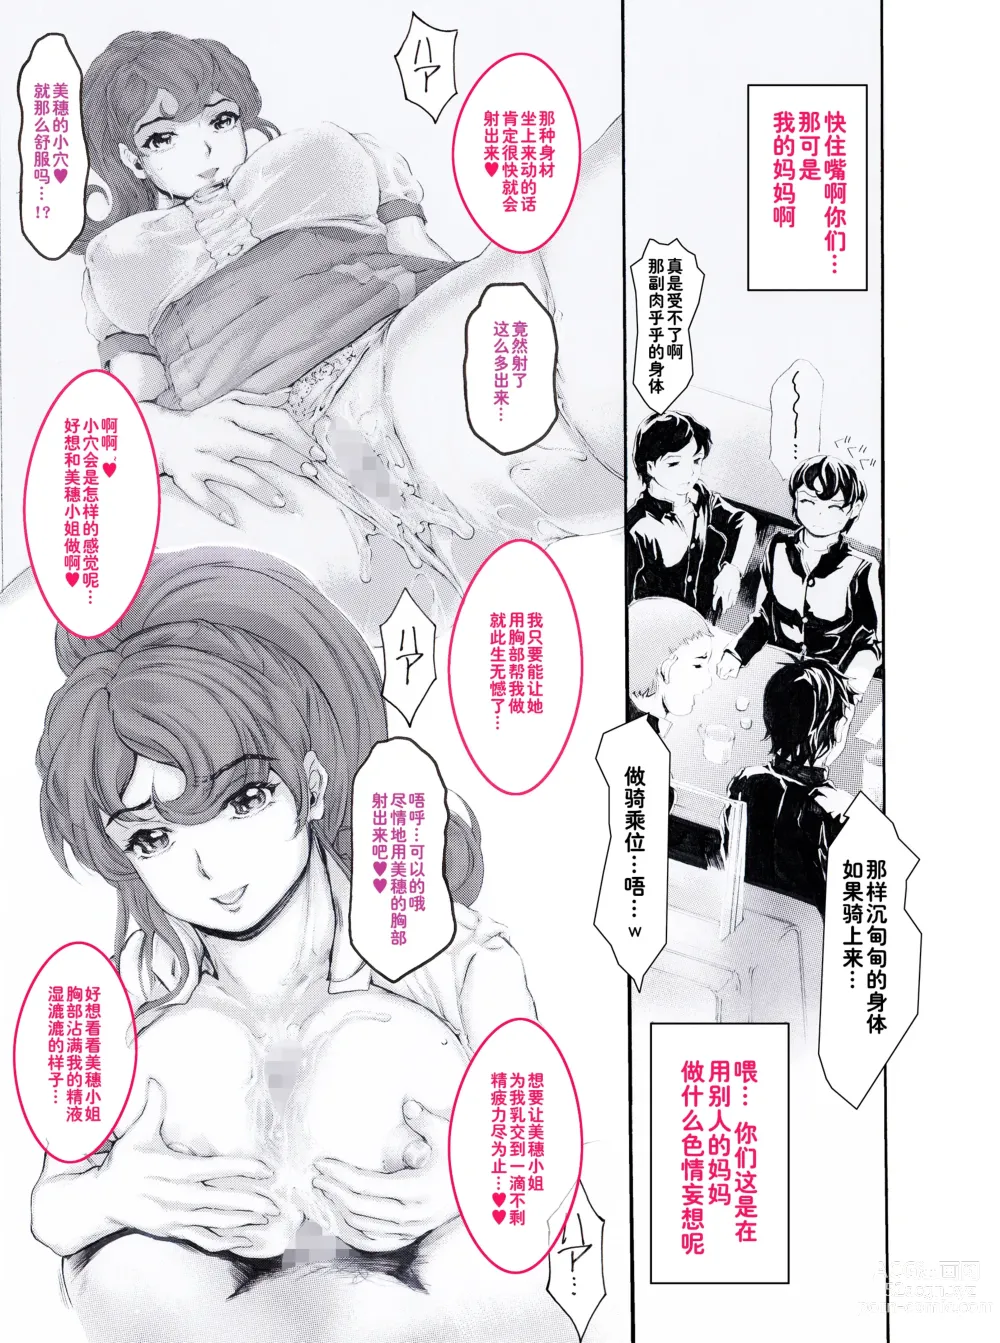 Page 15 of doujinshi Kaa-chan Sugoi yo